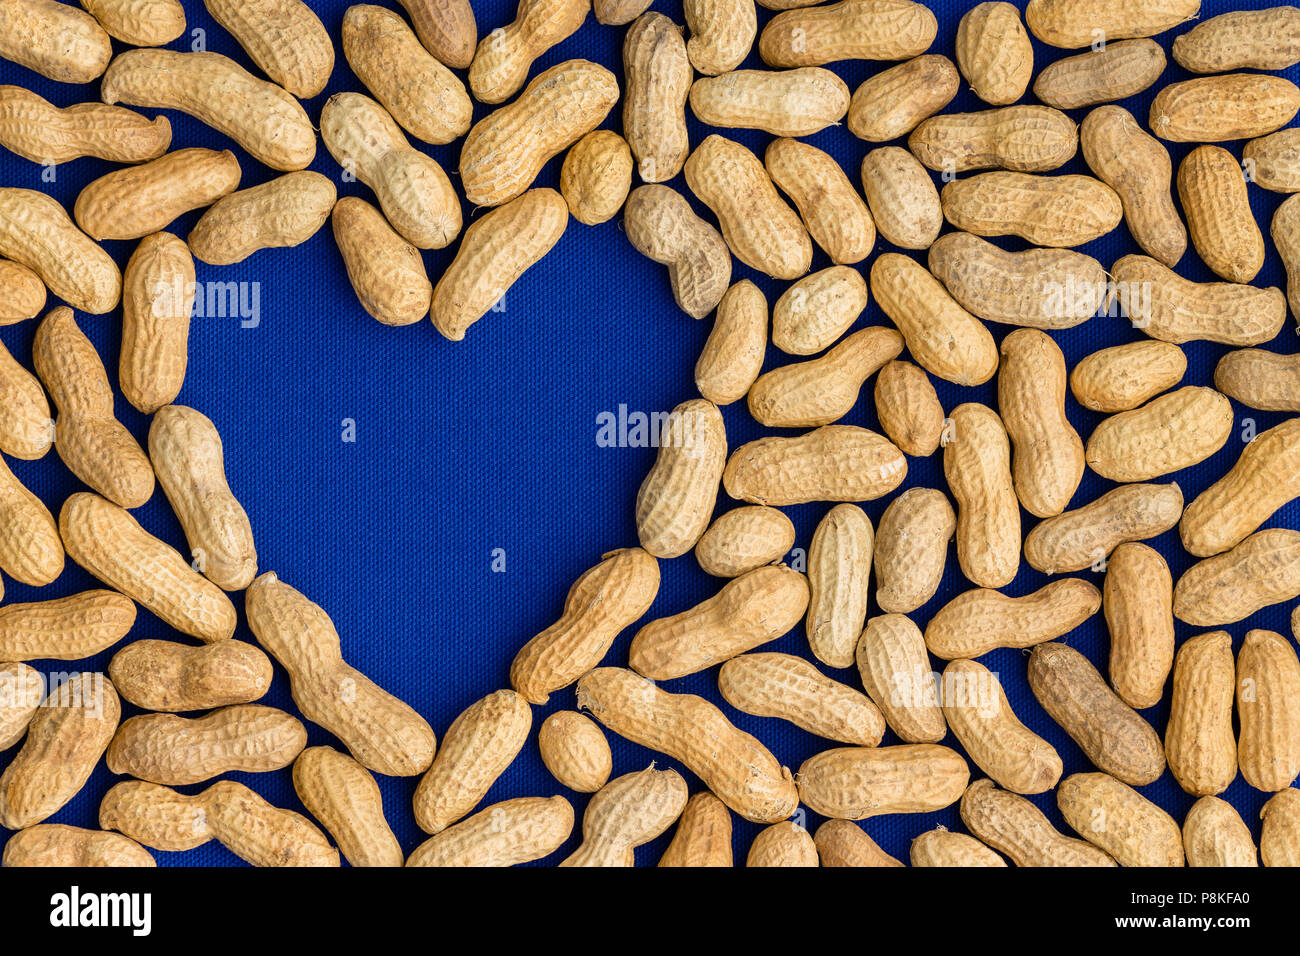 Rahmen mit einer ordentlichen Schicht von natürlichen Ganzen gesunden Erdnüsse oder Erdnüsse in ihren Hülsen oder Muscheln rund um ein blaues Herz Form mit Kopie der Platz in einem conceptu Stockfoto